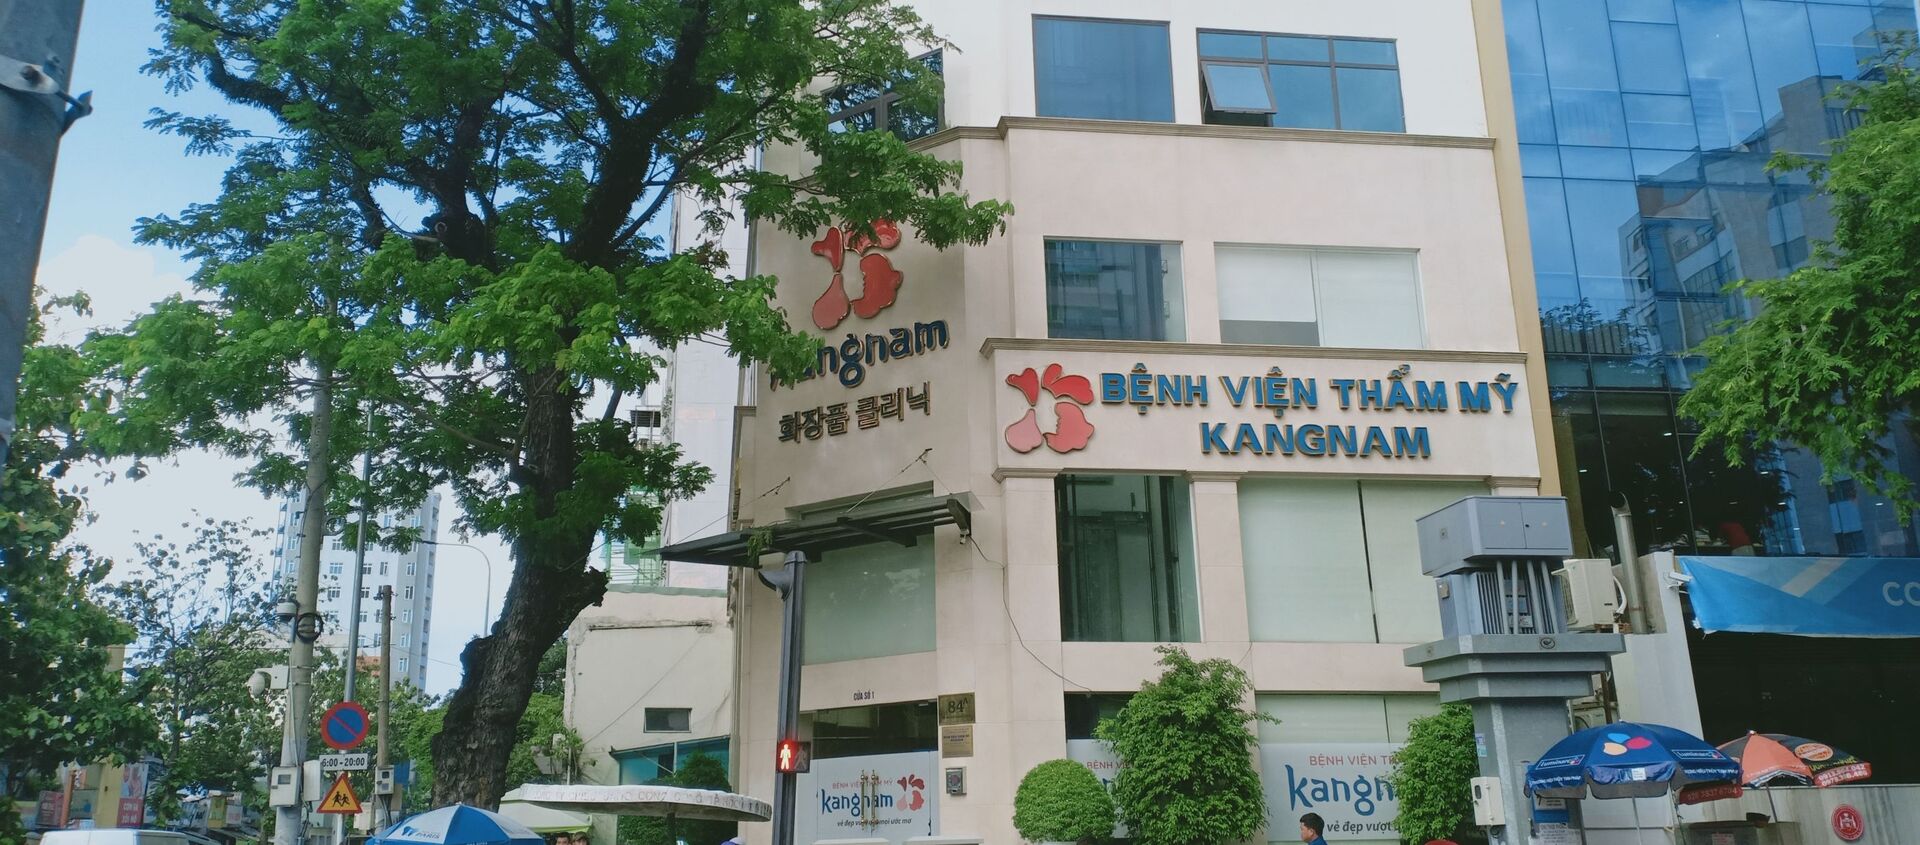 Bệnh viện thẩm mỹ Kangnam tại địa chỉ 84A, đường Bà Huyện Thanh Quan, quận 3, thành phố Hồ Chí Minh. - Sputnik Việt Nam, 1920, 15.10.2019